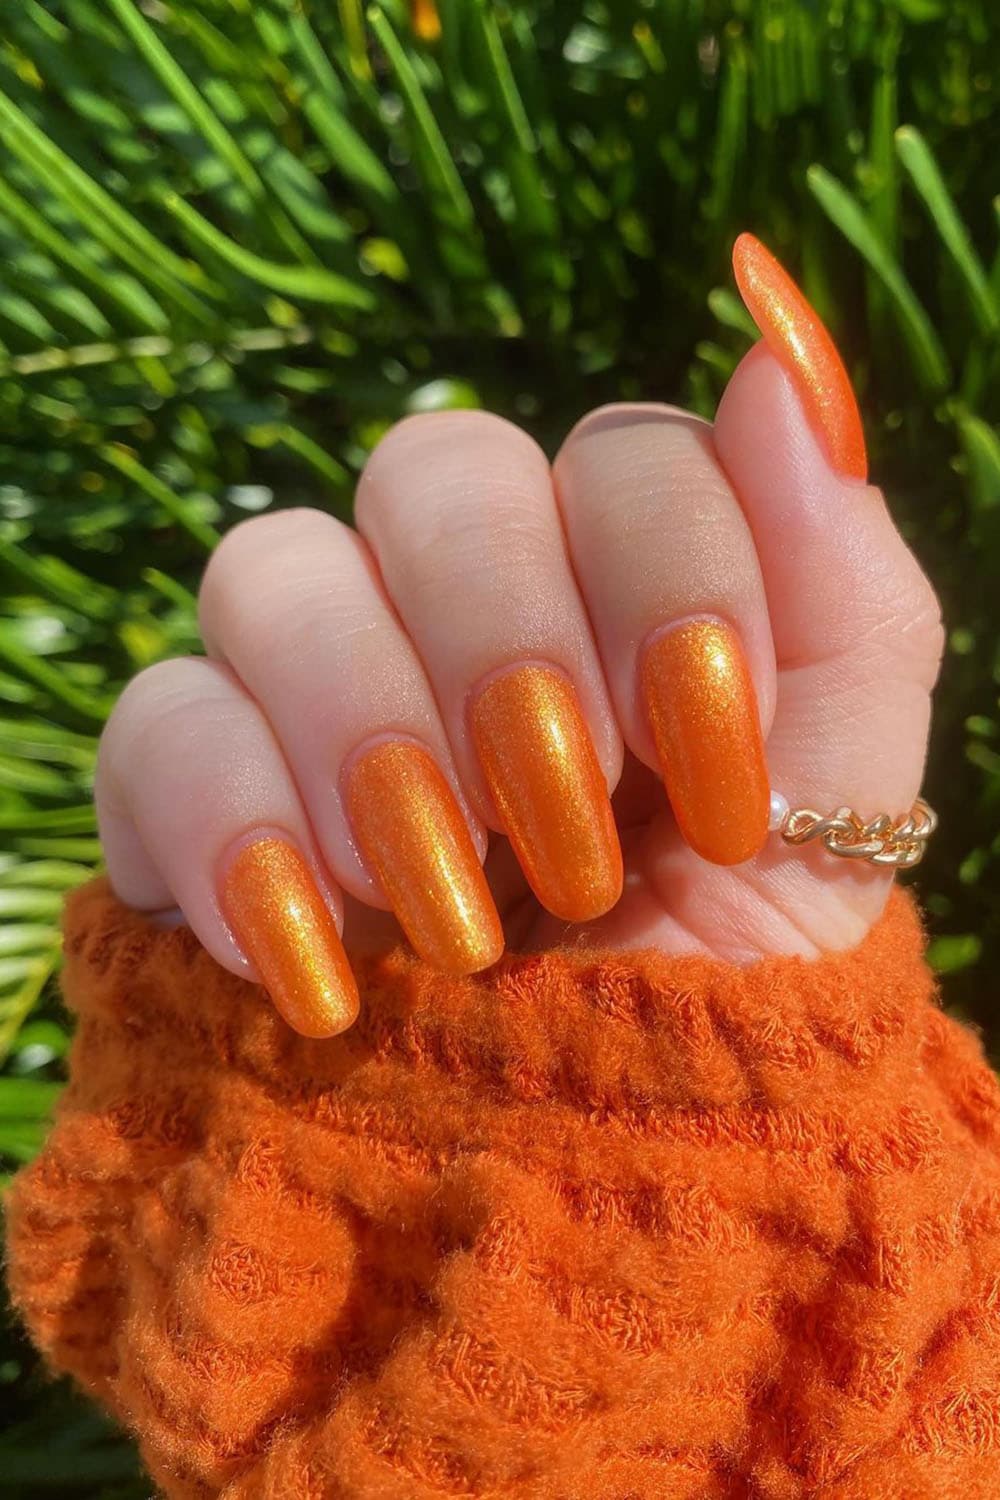 Shining golden orange nails